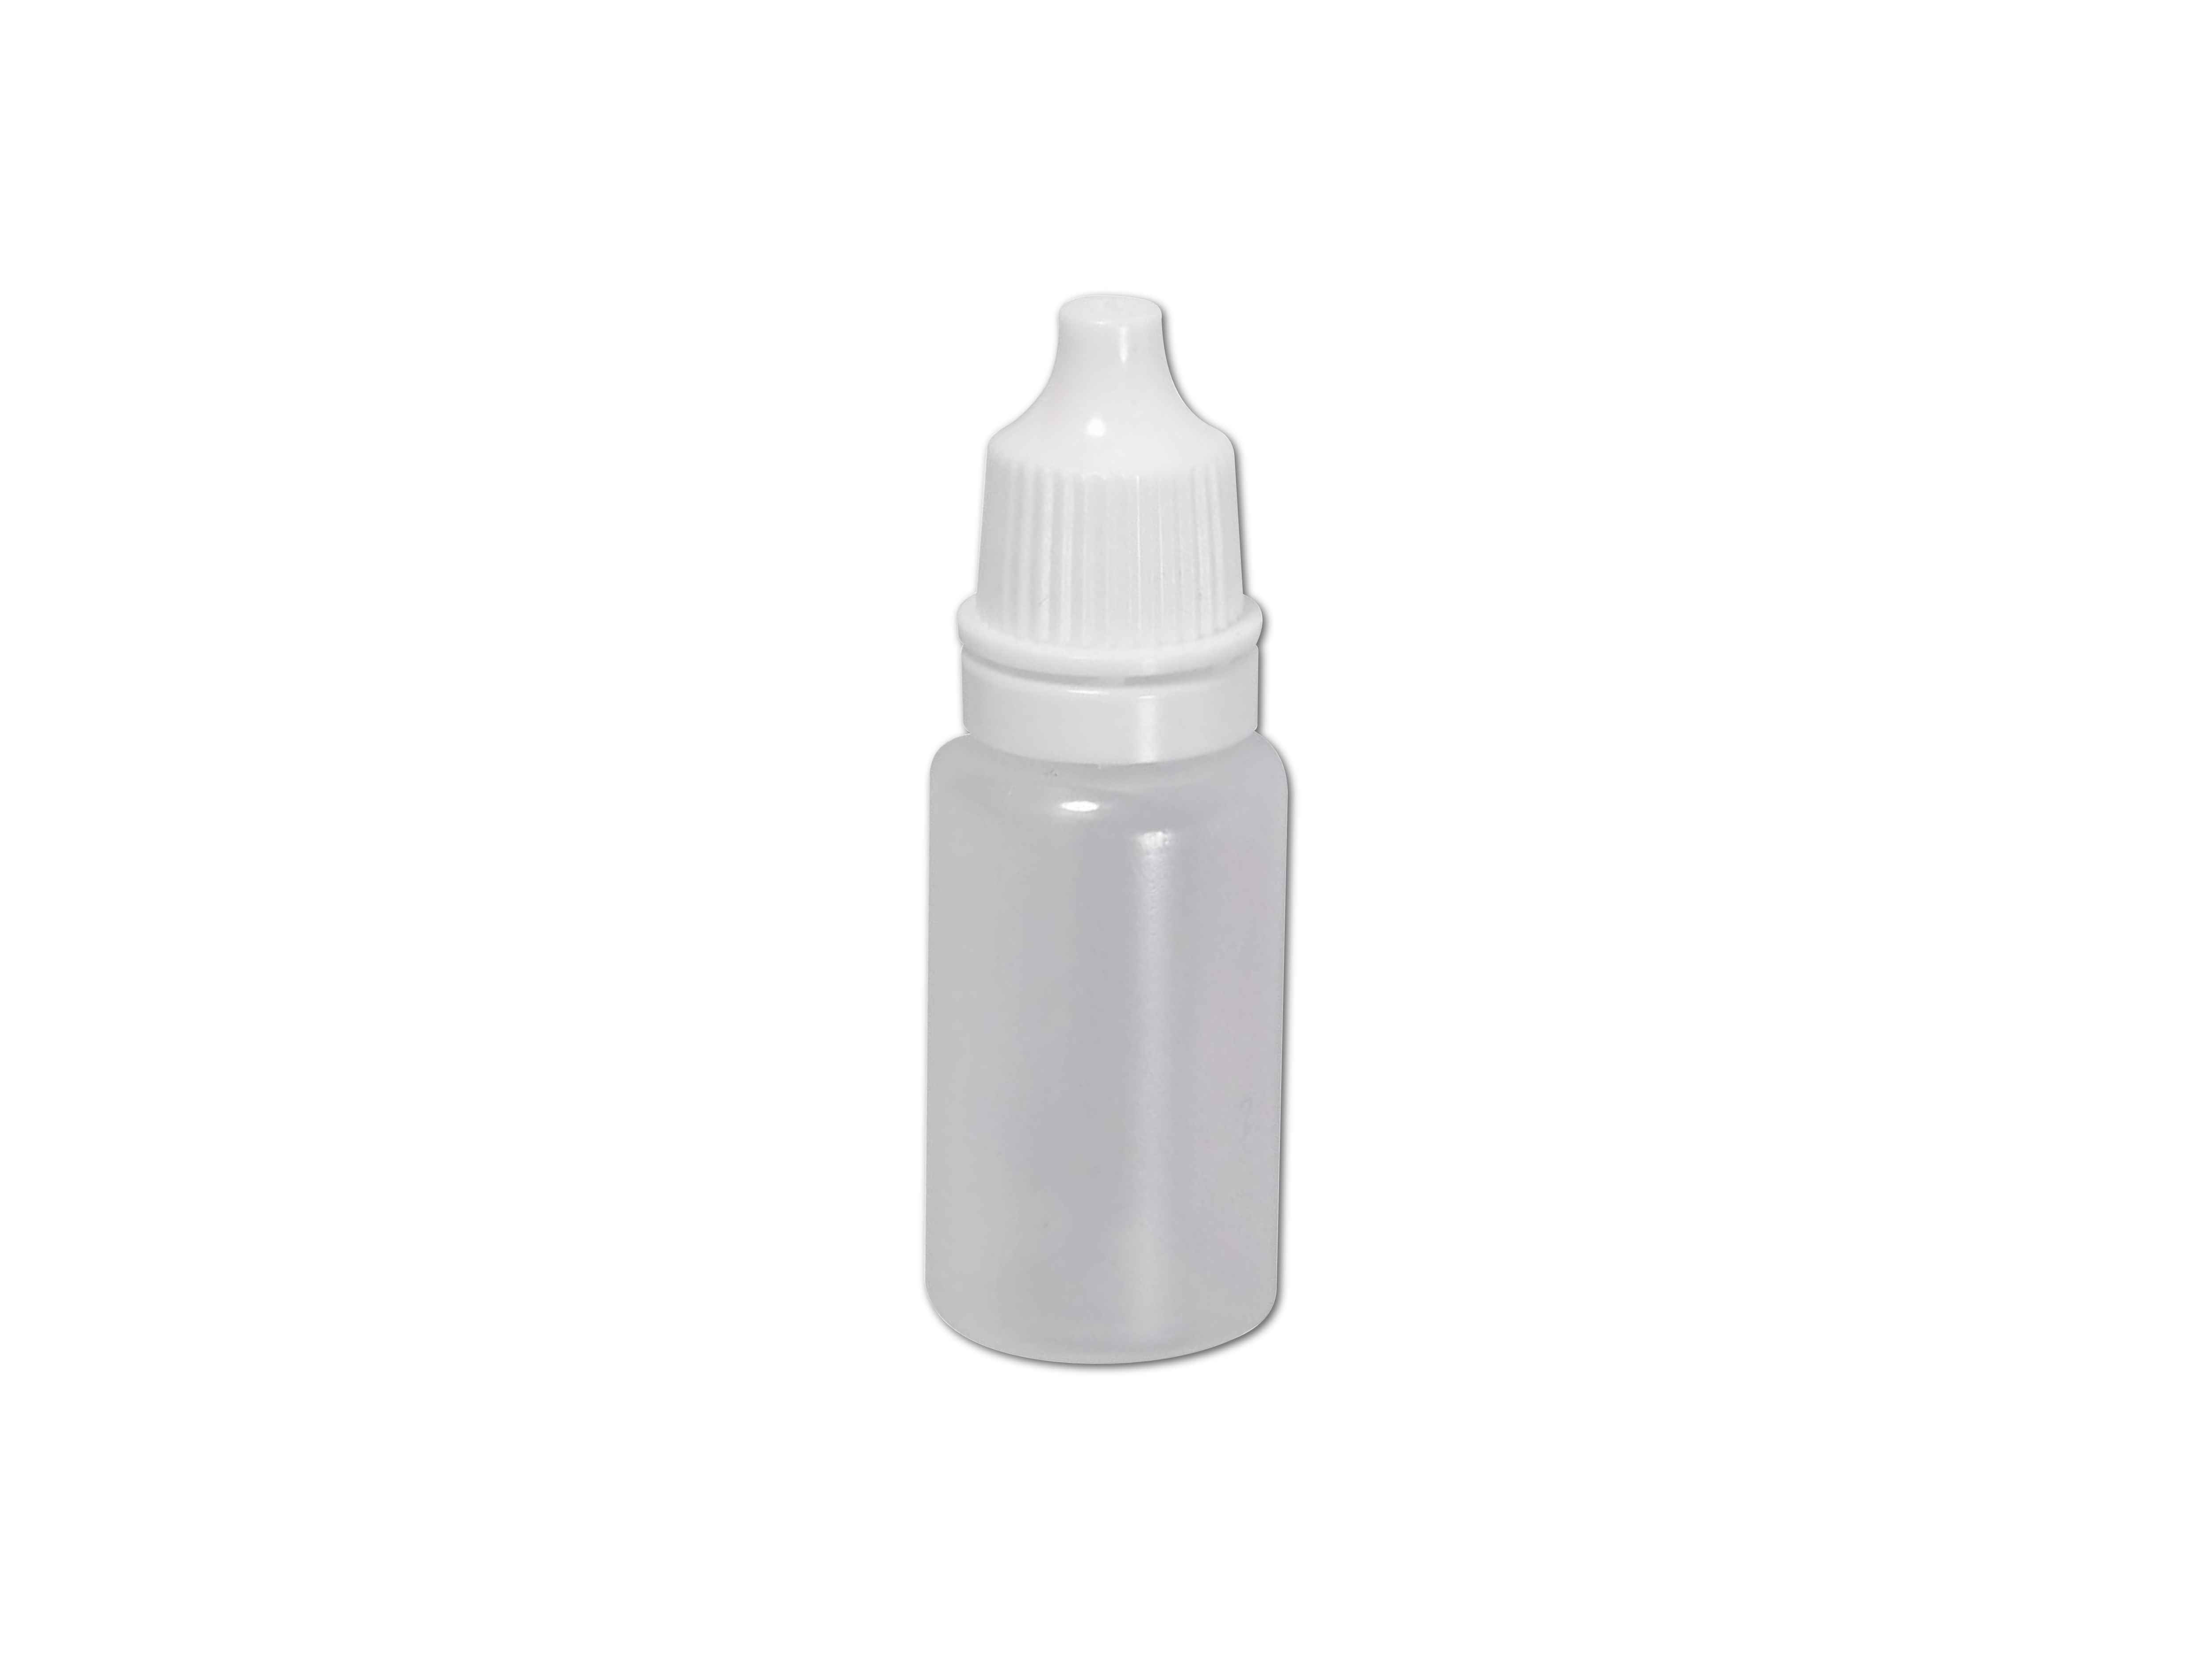    K-Augentropfen Flaschen steril 10ml